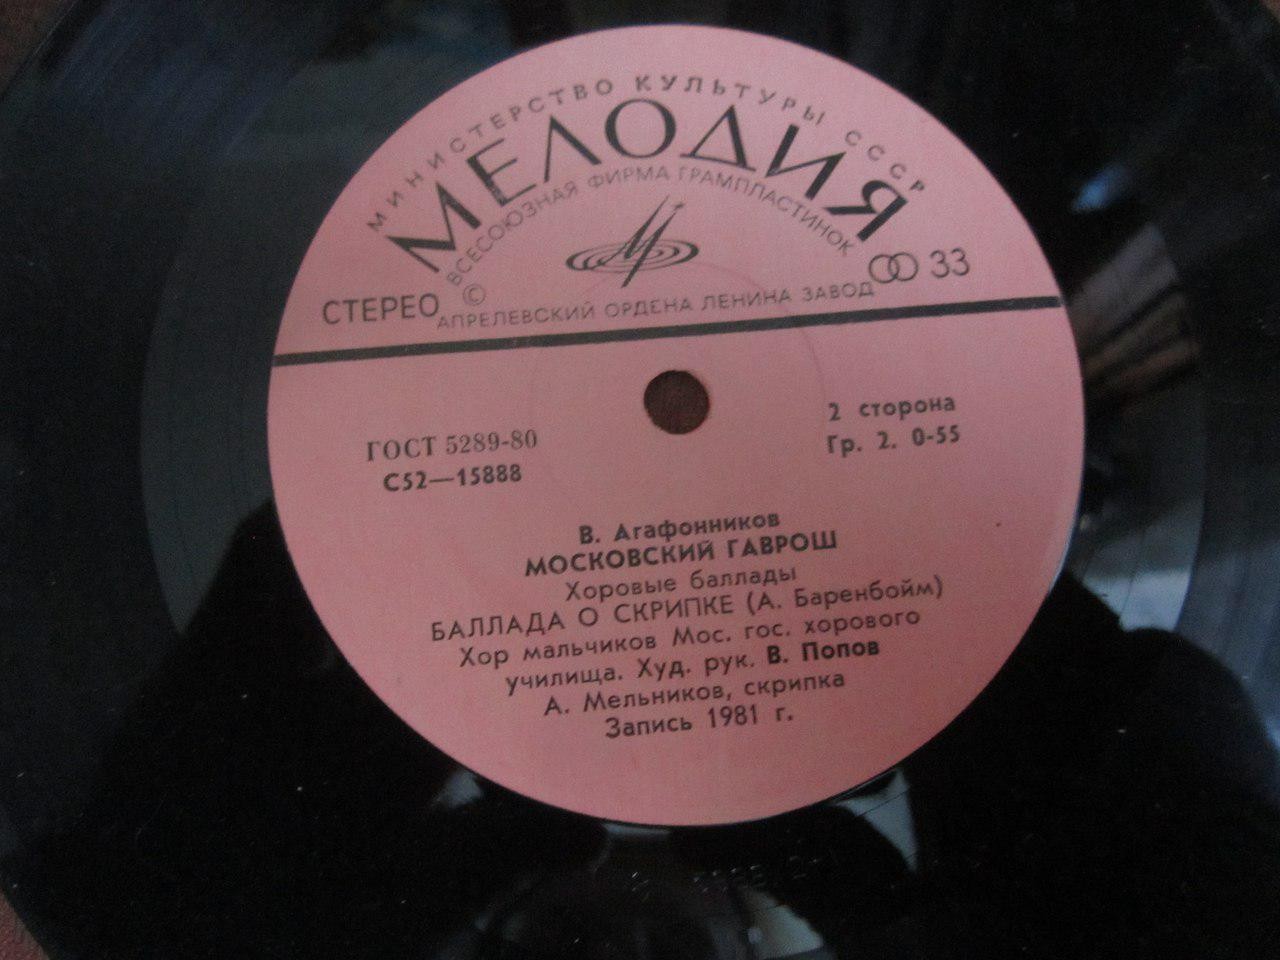 В. АГАФОННИКОВ (1936): «Московский Гаврош», хоровые баллады: